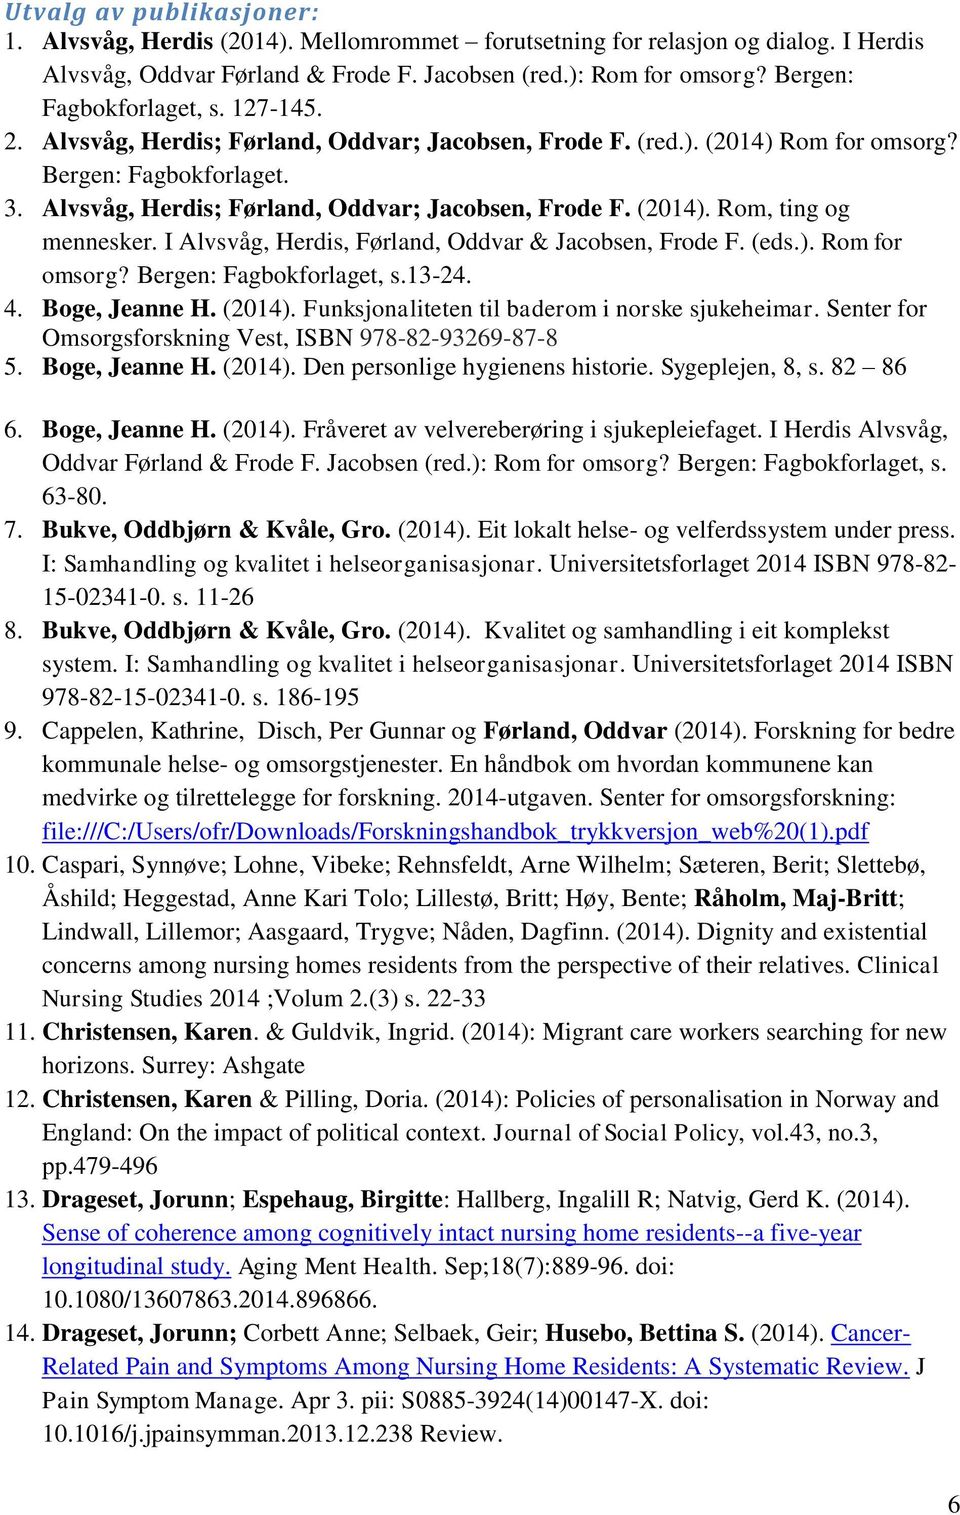 Alvsvåg, Herdis; Førland, Oddvar; Jacobsen, Frode F. (2014). Rom, ting og mennesker. I Alvsvåg, Herdis, Førland, Oddvar & Jacobsen, Frode F. (eds.). Rom for omsorg? Bergen: Fagbokforlaget, s.13-24. 4.